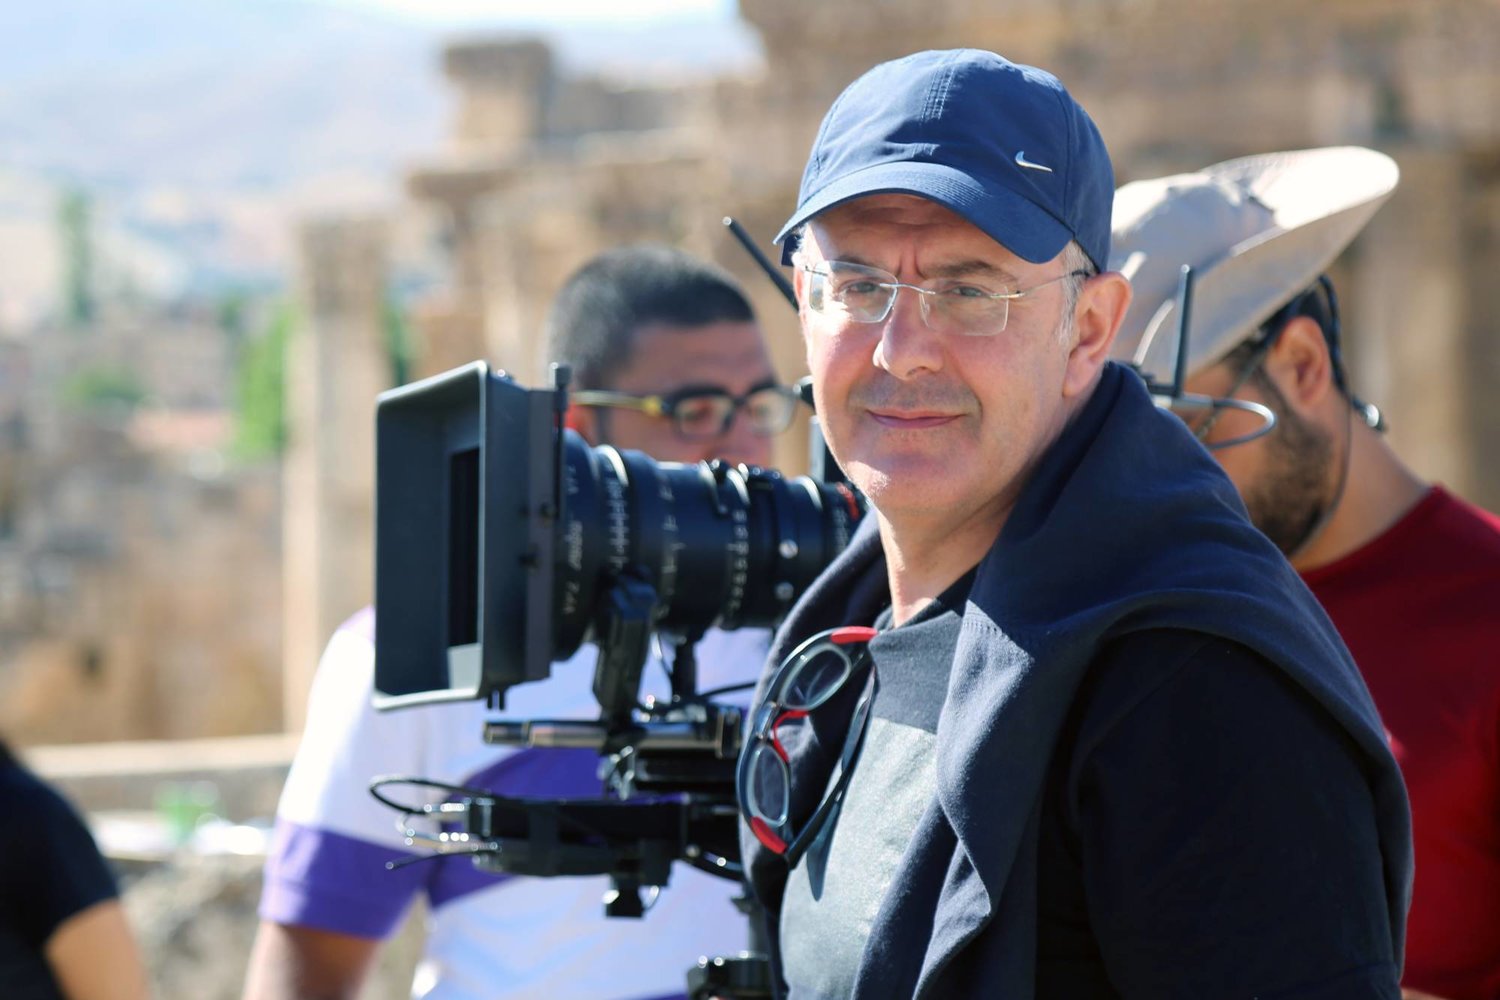 فيليب عرقتنجي أحد أشهر المخرجين السينمائيين في لبنان (مصدرها فيليب عرقتنجي)